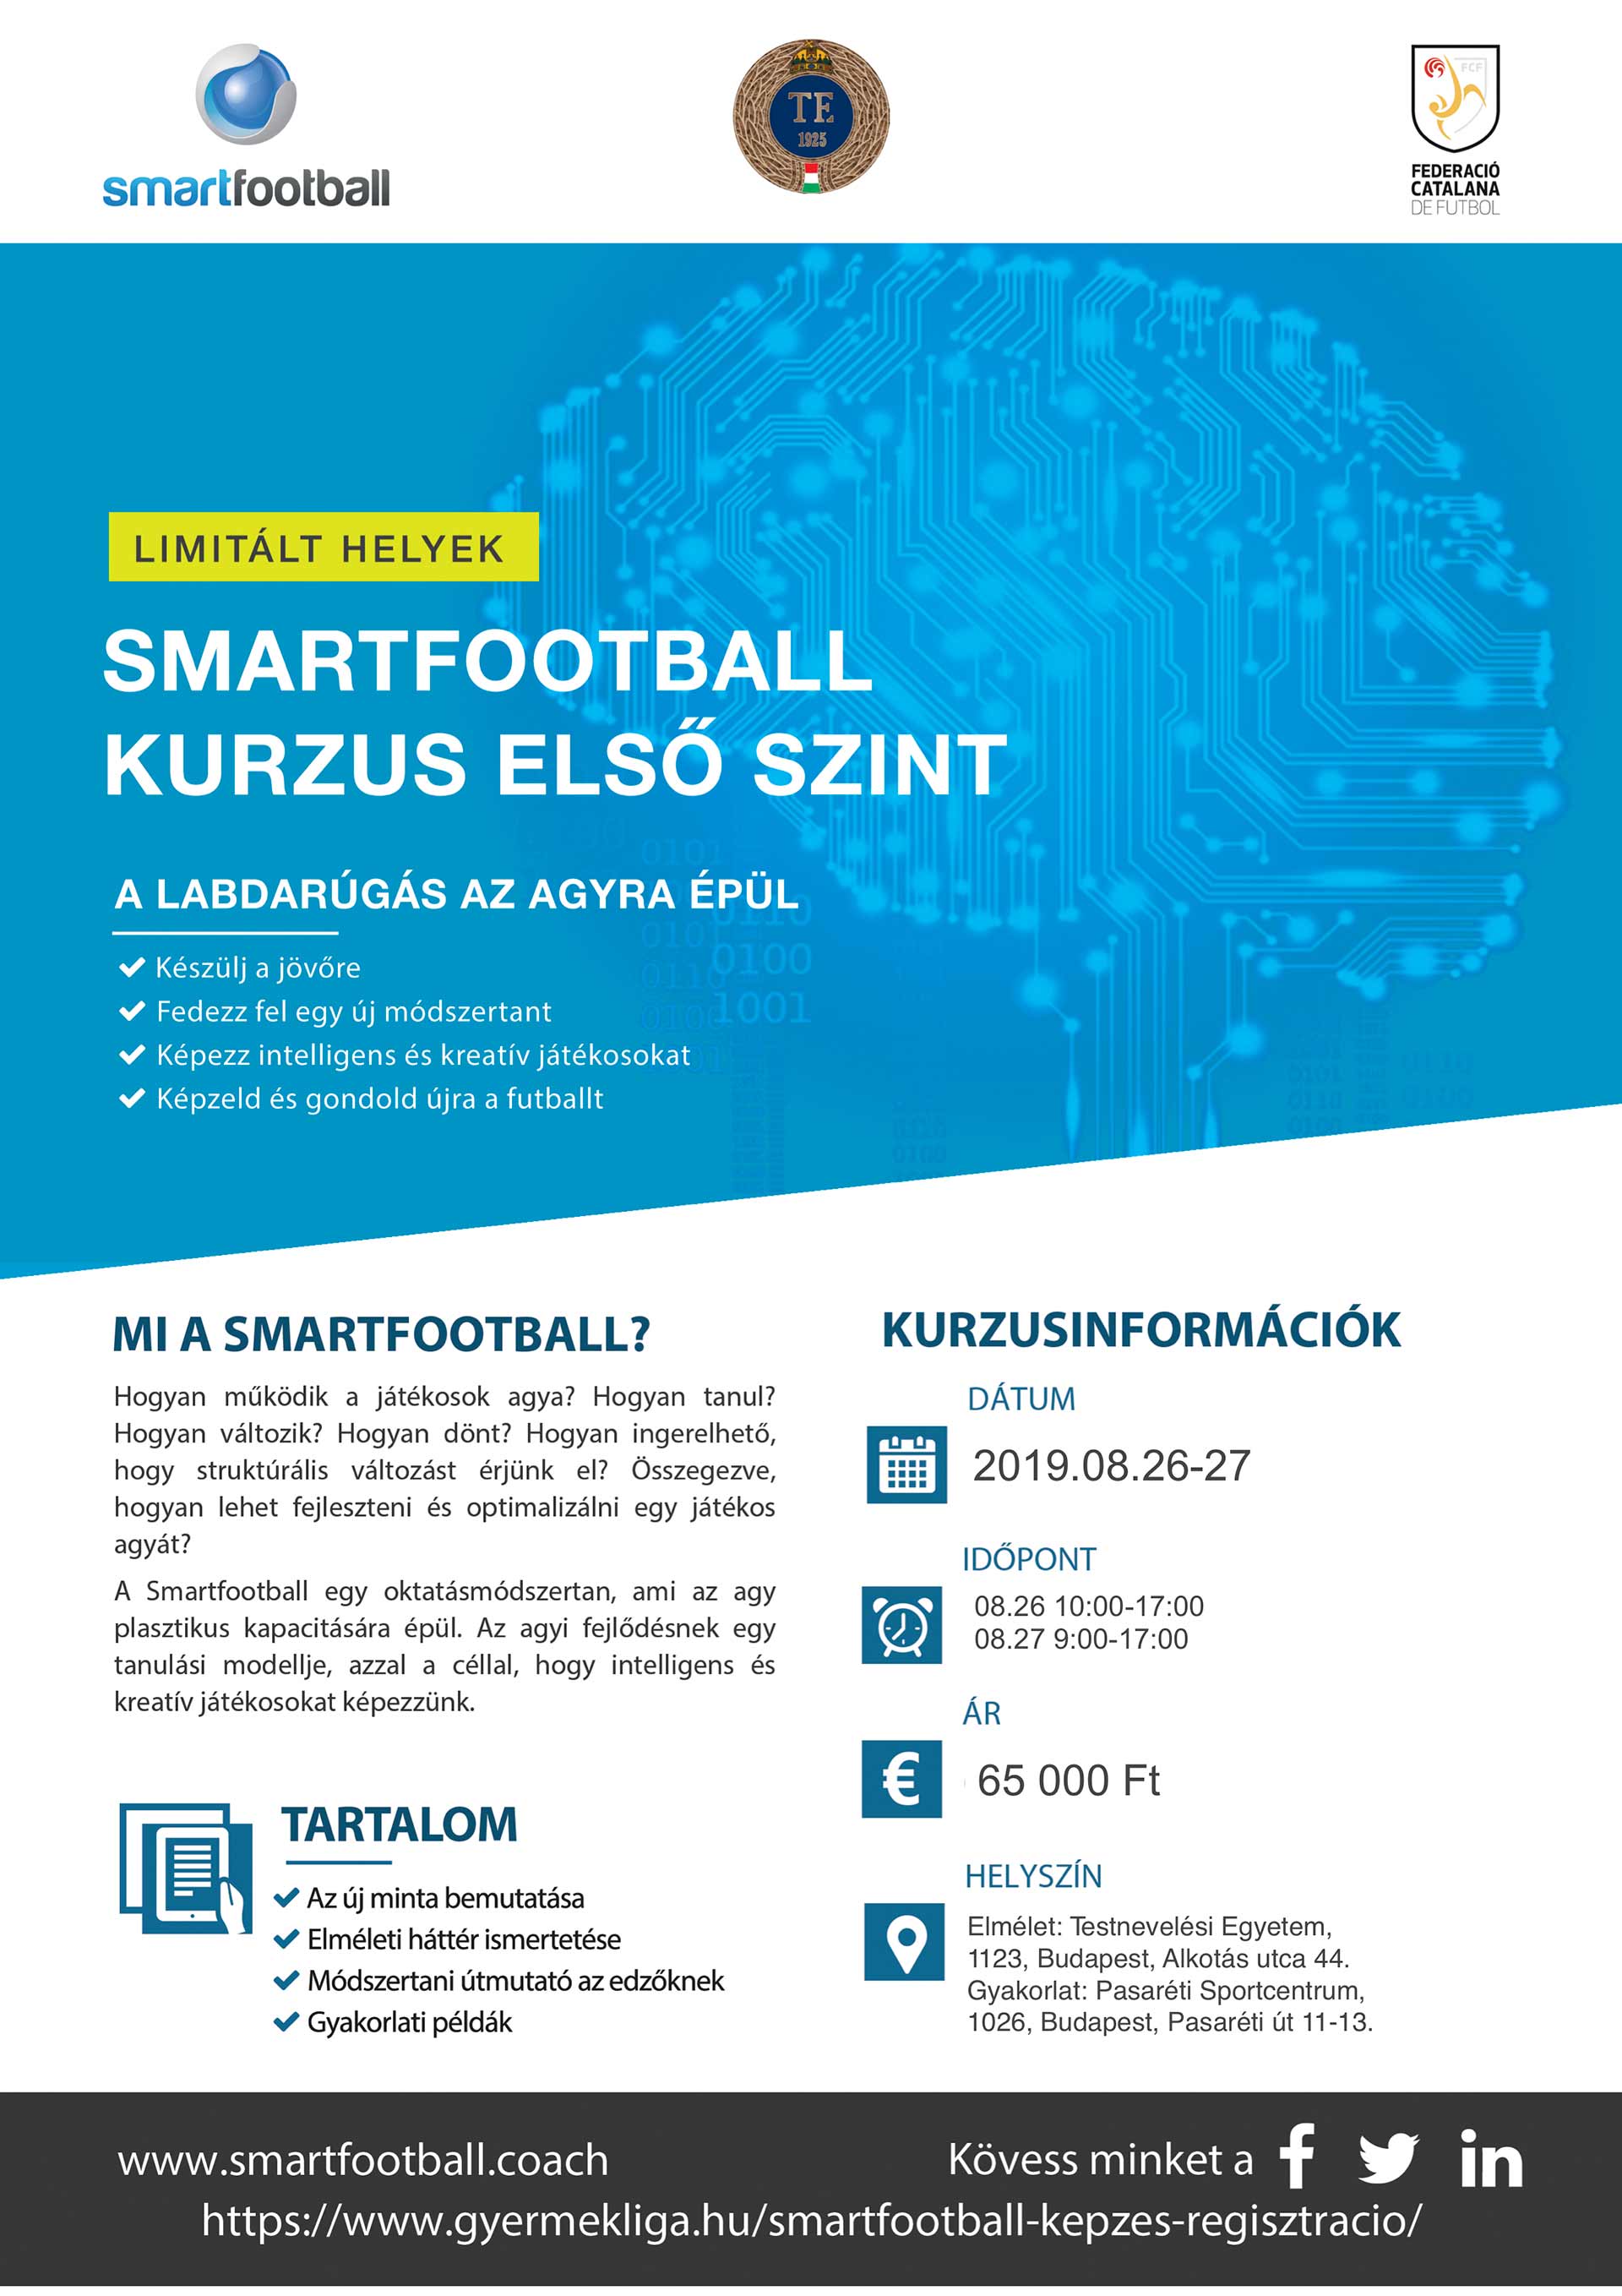 Smartfootball képzés a Testnevelési Egyetemen (plakát)